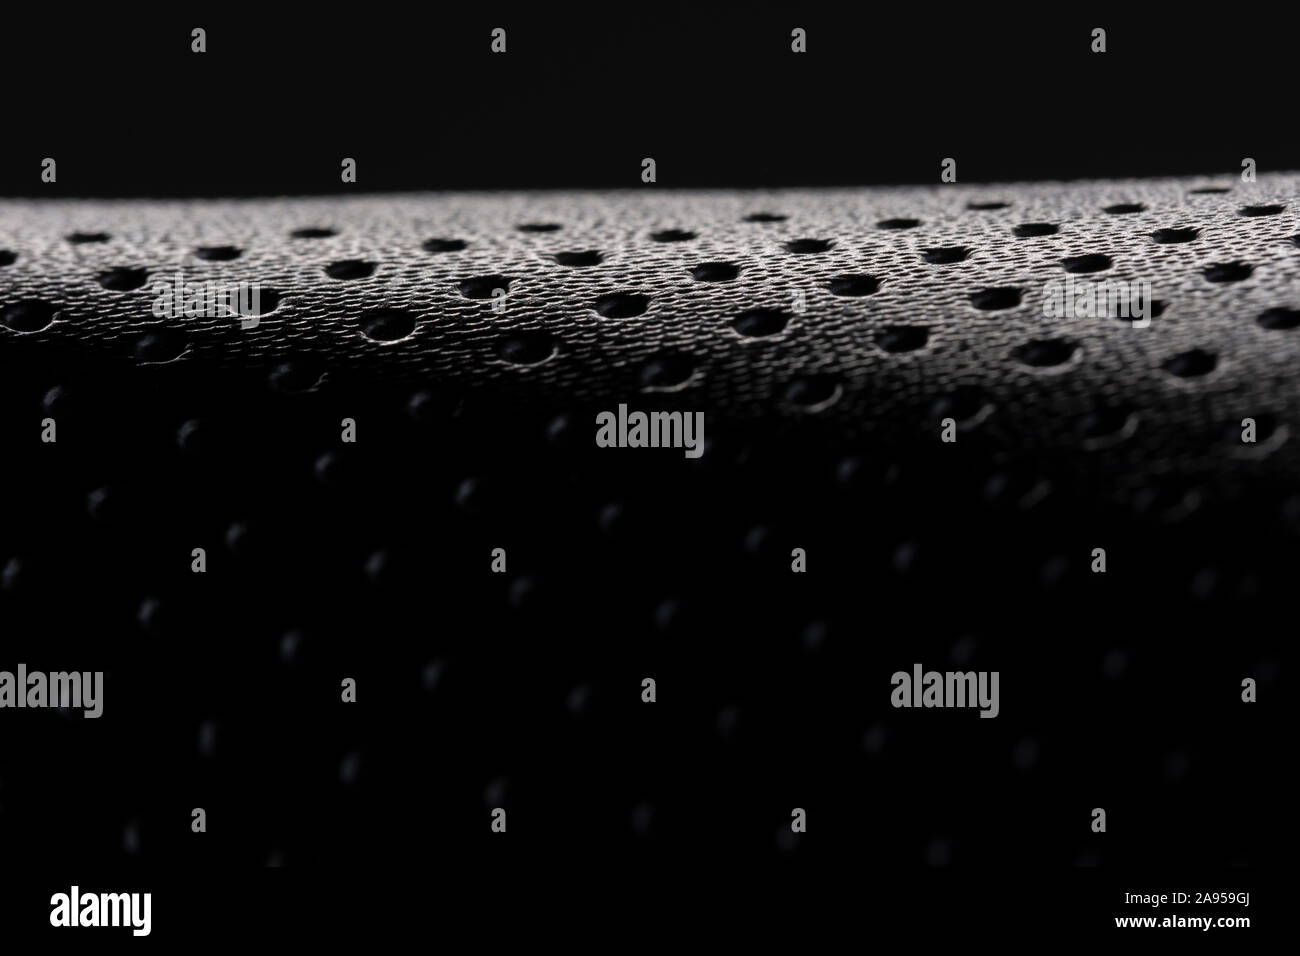 Makro Bild der Textur eines schwarzen Fahrrad vor einem schwarzen Hintergrund Stockfoto